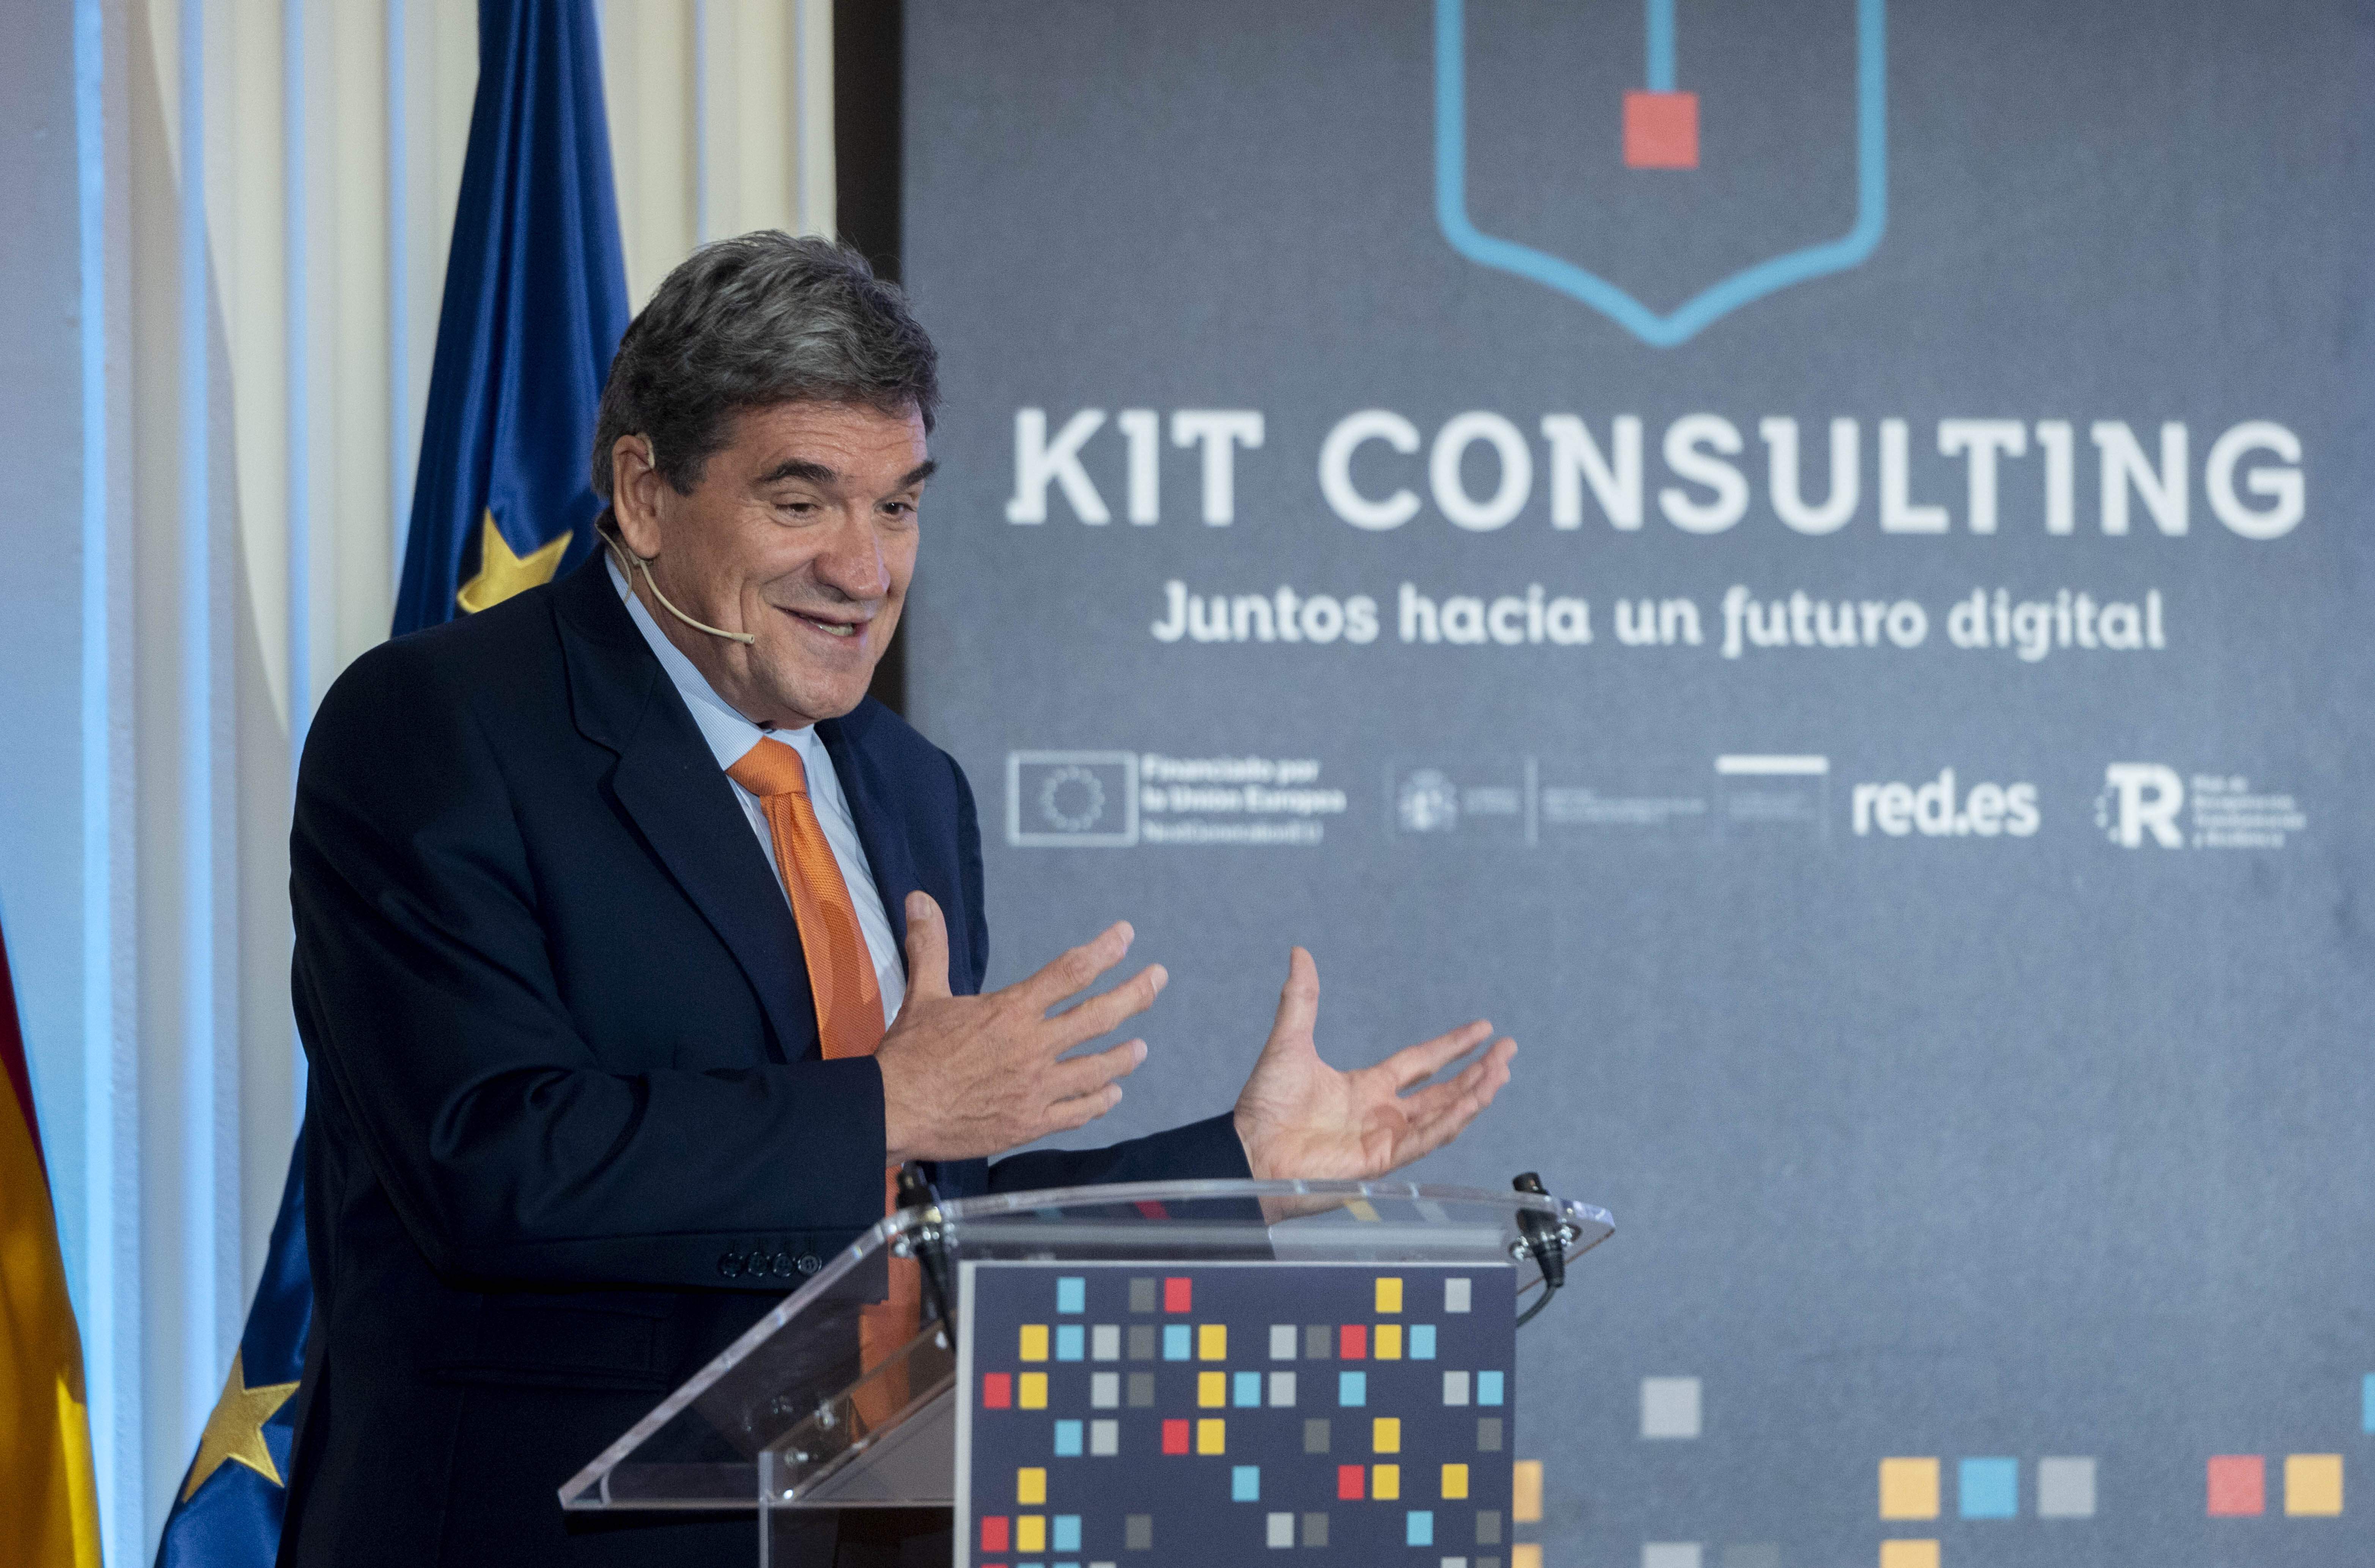 Kit Consulting, la nova ajuda del govern espanyol per aplicar la IA a les empreses